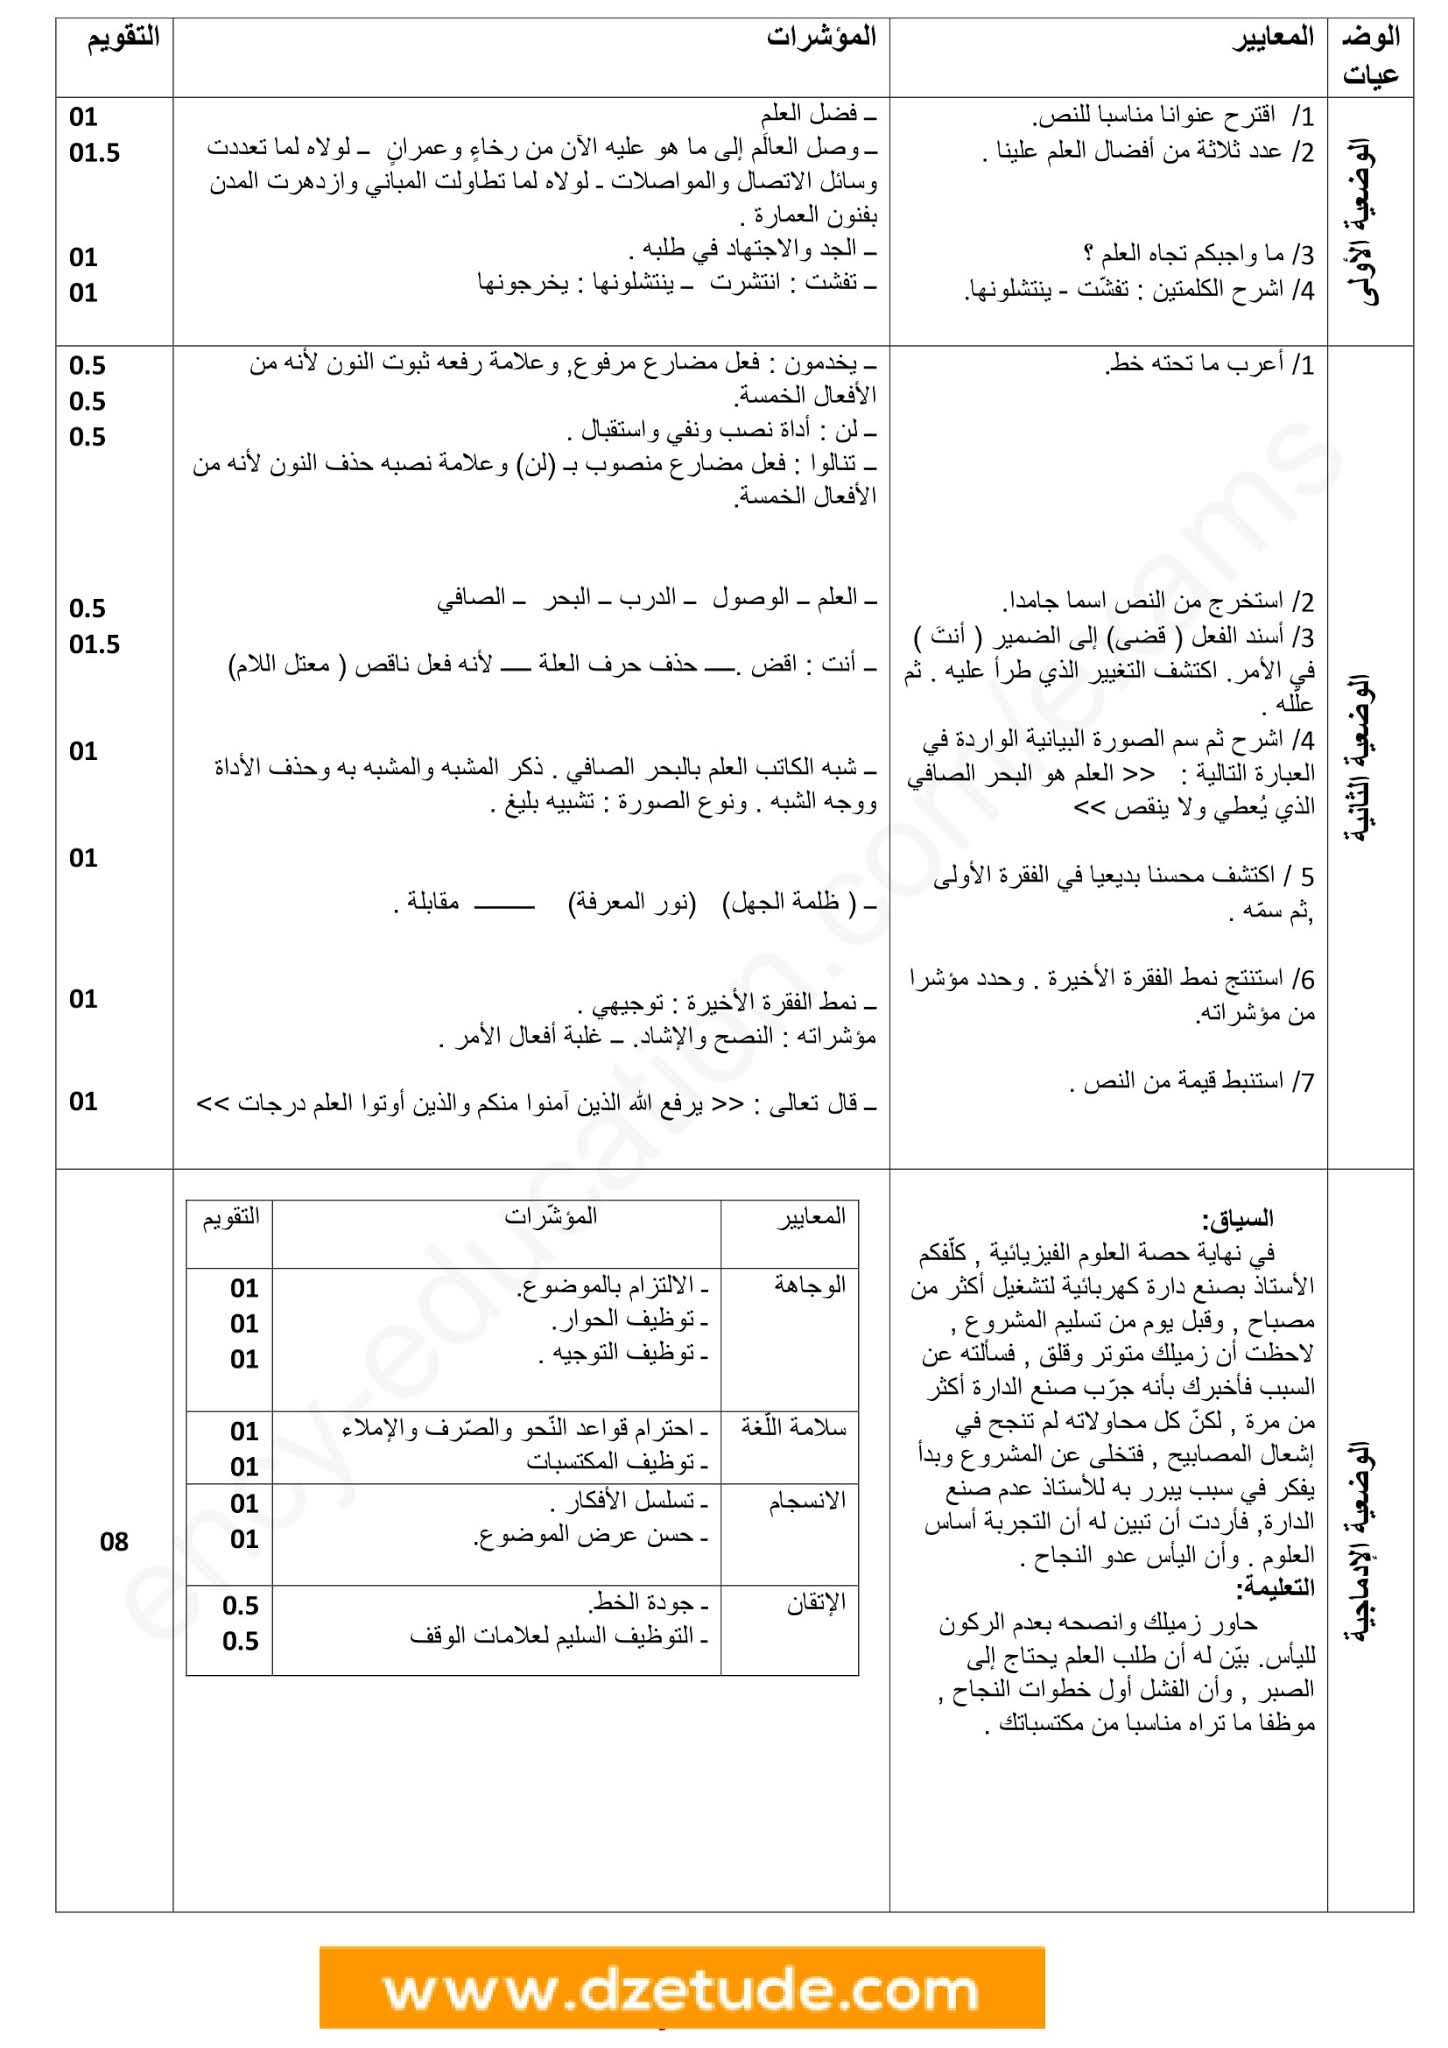 إختبار اللغة العربية الفصل الثاني للسنة الثانية متوسط - الجيل الثاني نموذج 2